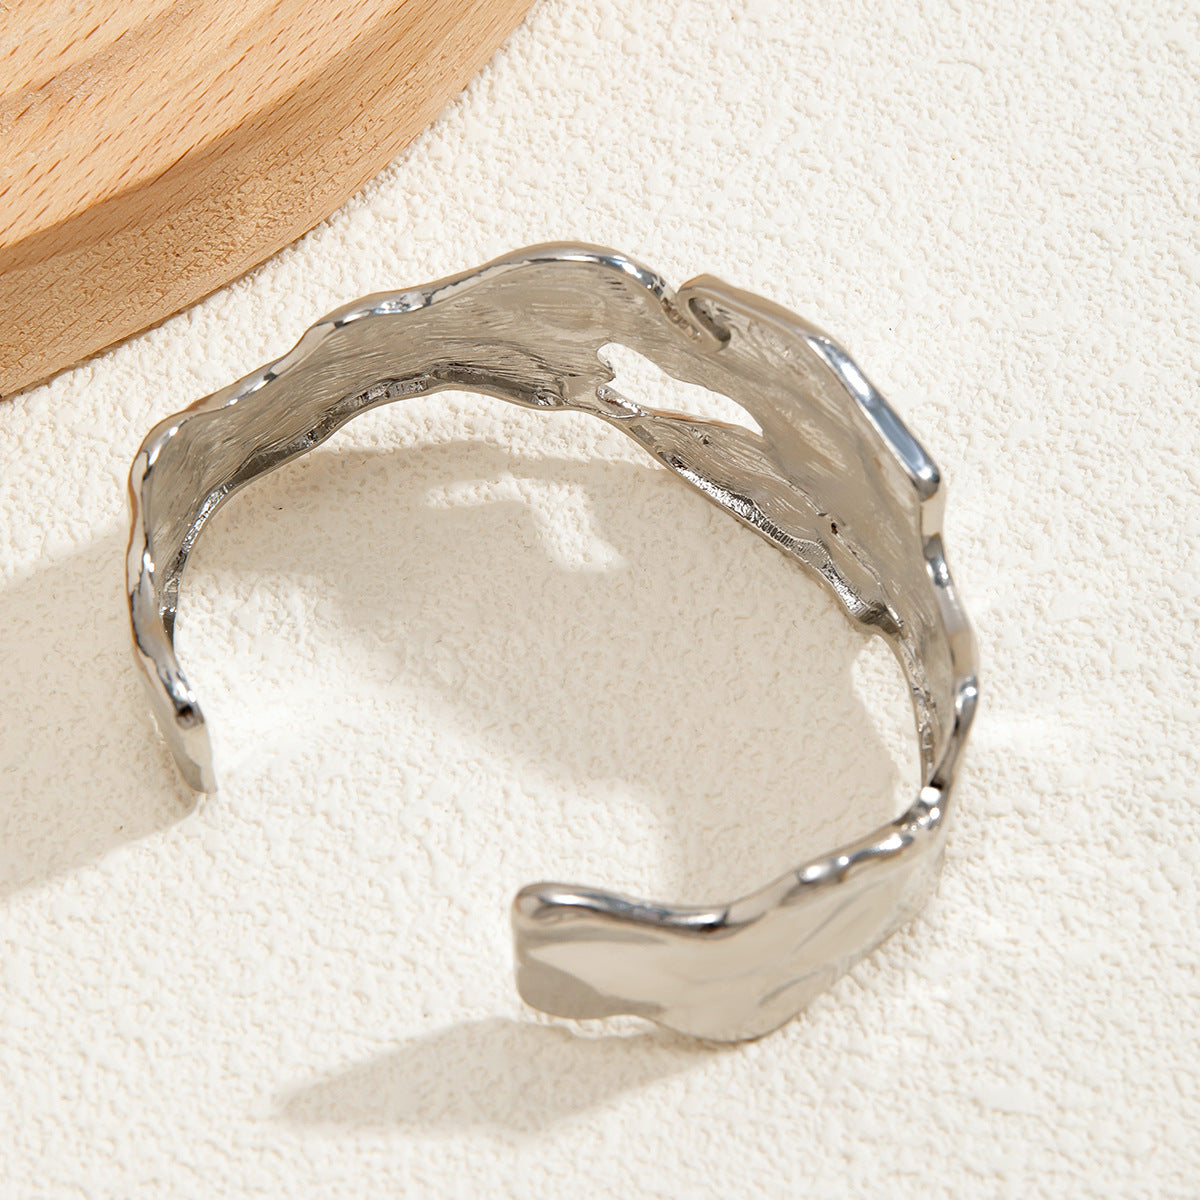 Bracelet in Melted Metal Design